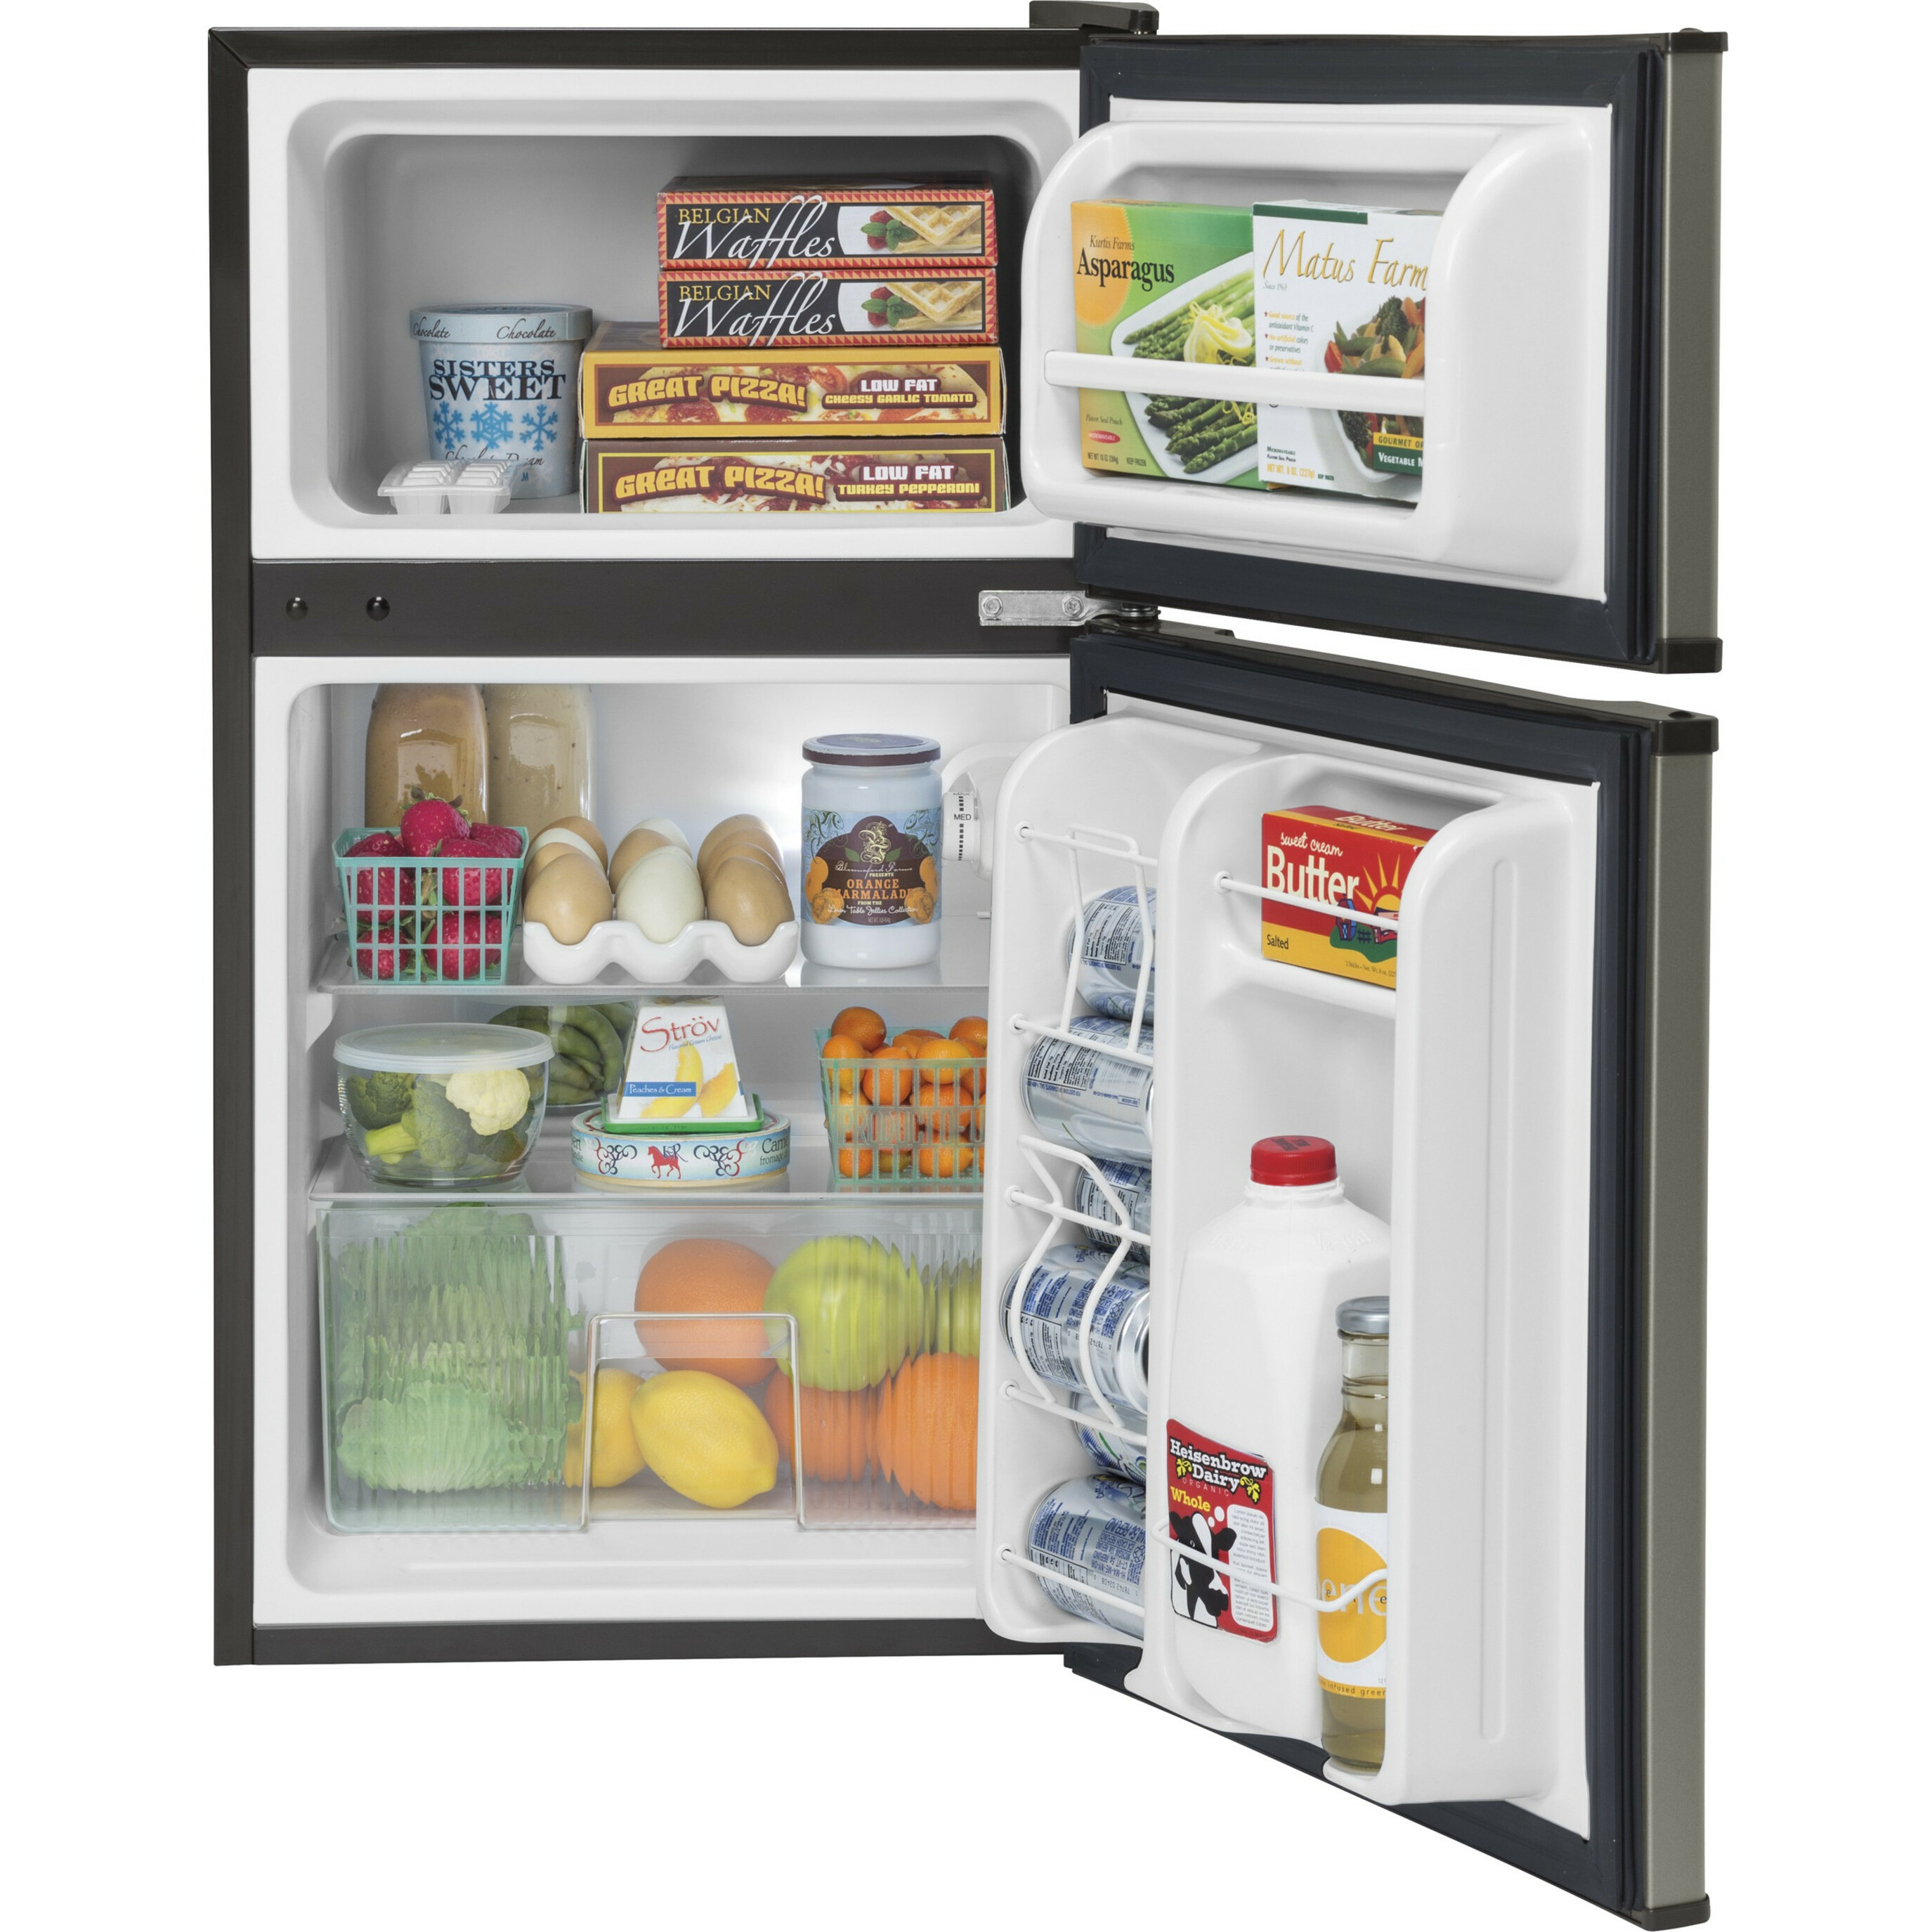 GE Appliances Double-Door Compact Refrigerator - image 3 of 3